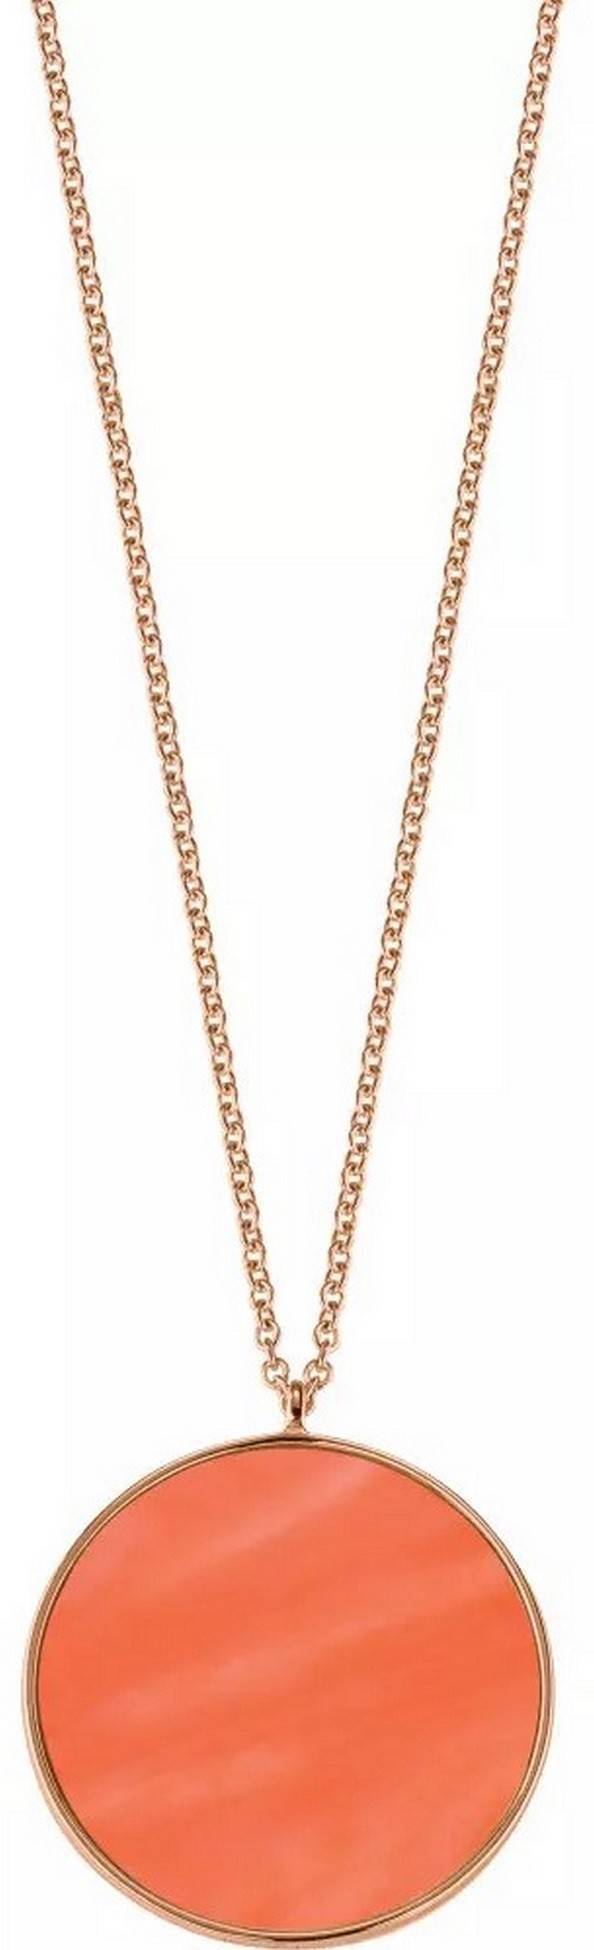 Morellato Perfetta Rose Gold Tone Sterling Silver SALX11 Women's Necklace